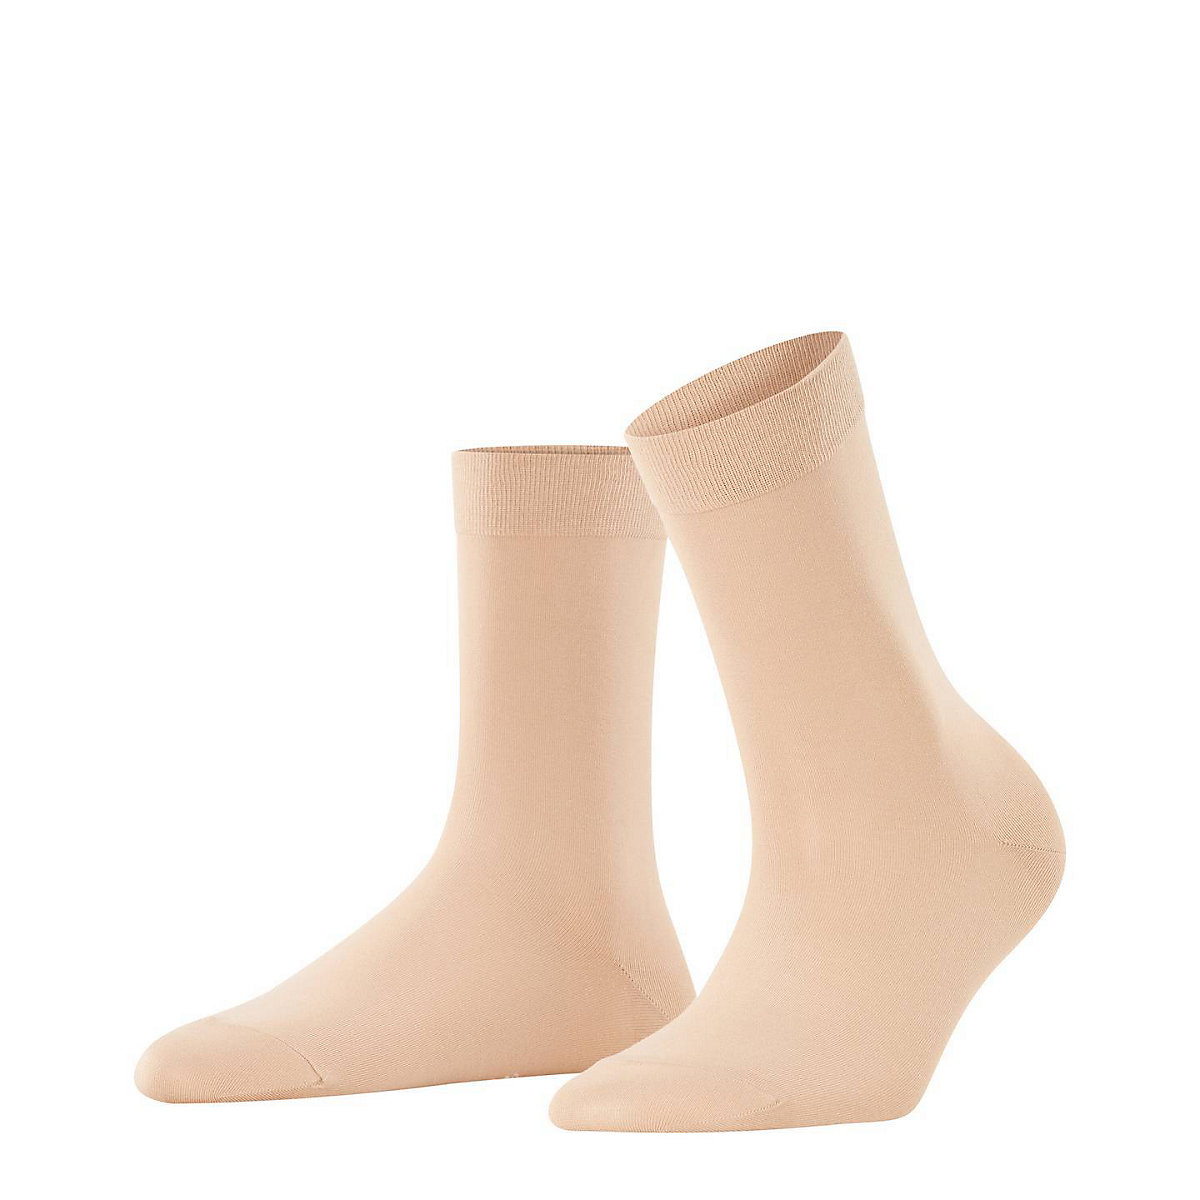 FALKE Damen Socken Cotton Touch Kurzsocken Knit Casual Baumwolle einfarbig Socken beige